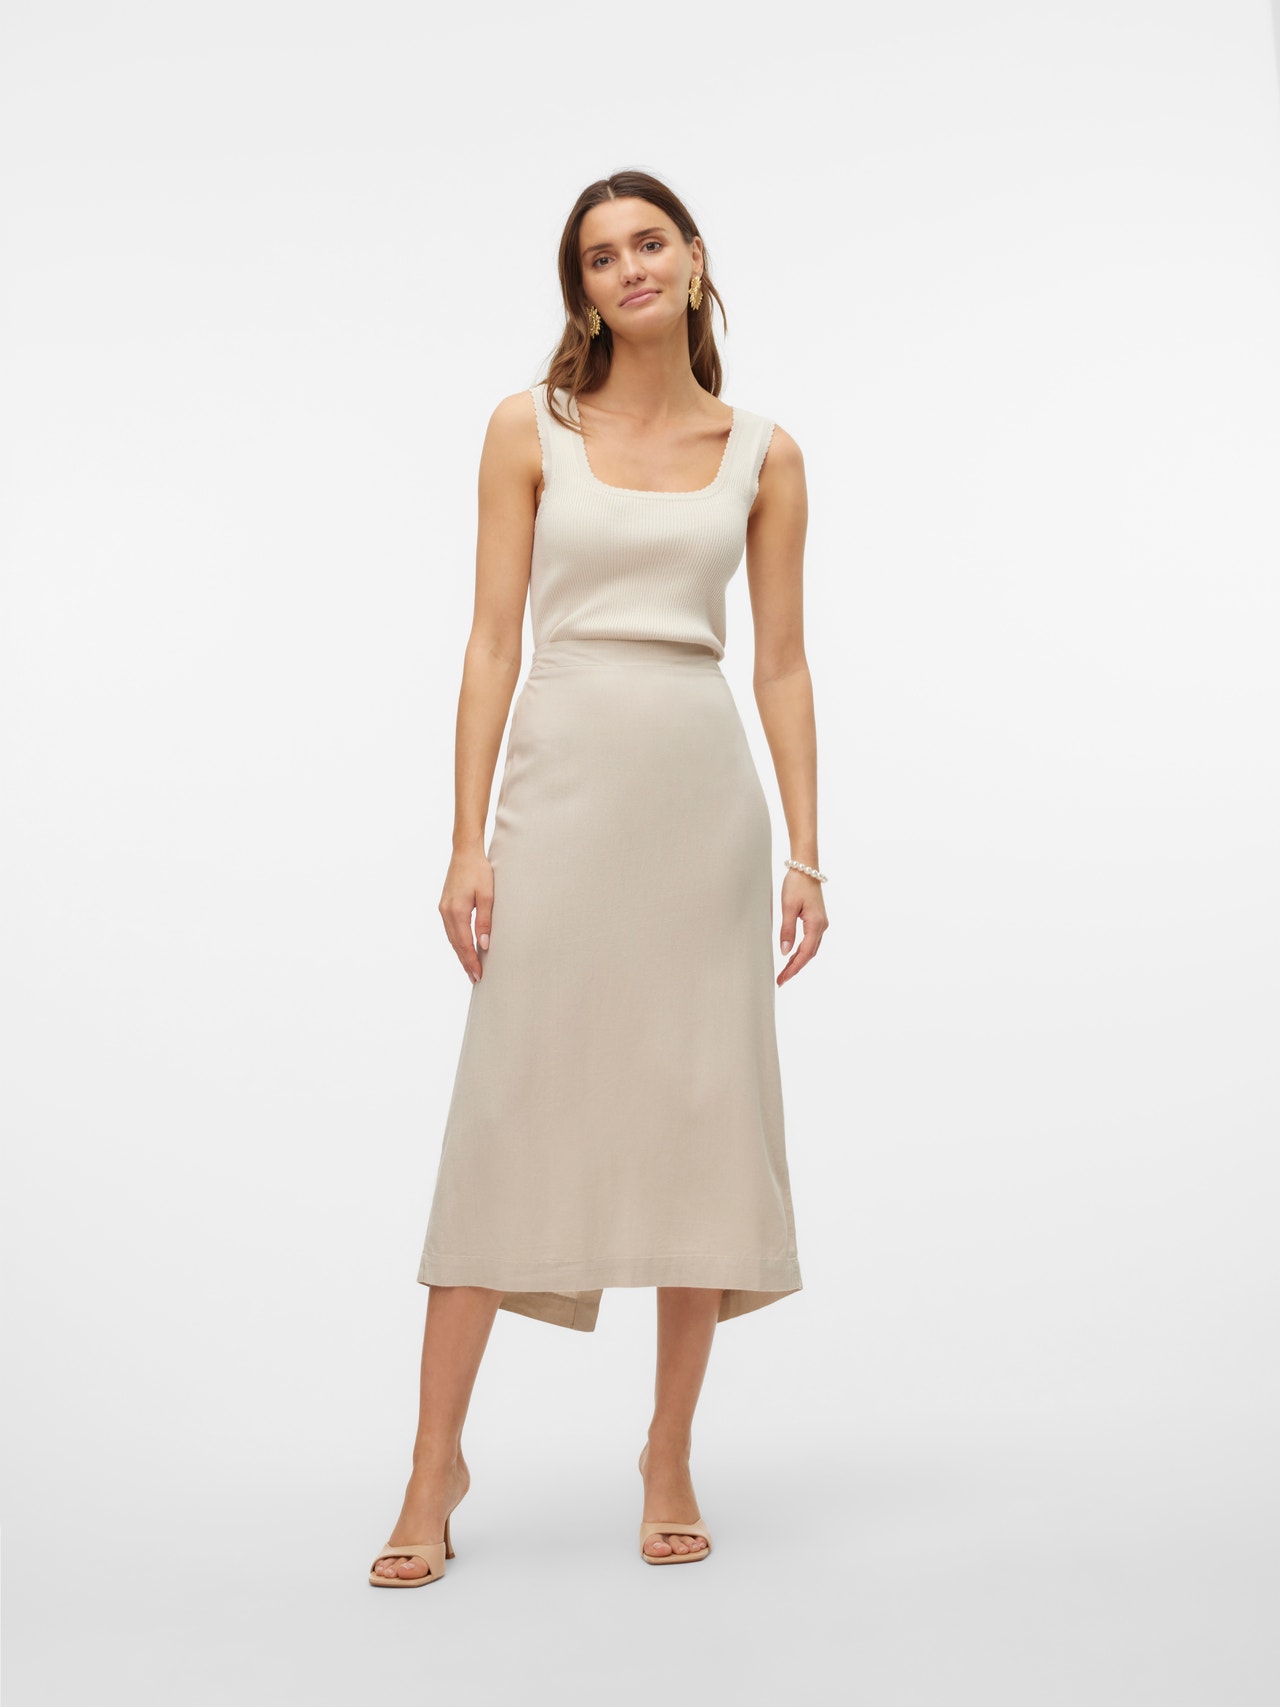 Vero Moda VMMYMILO Long skirt -Silver Lining - 10303726